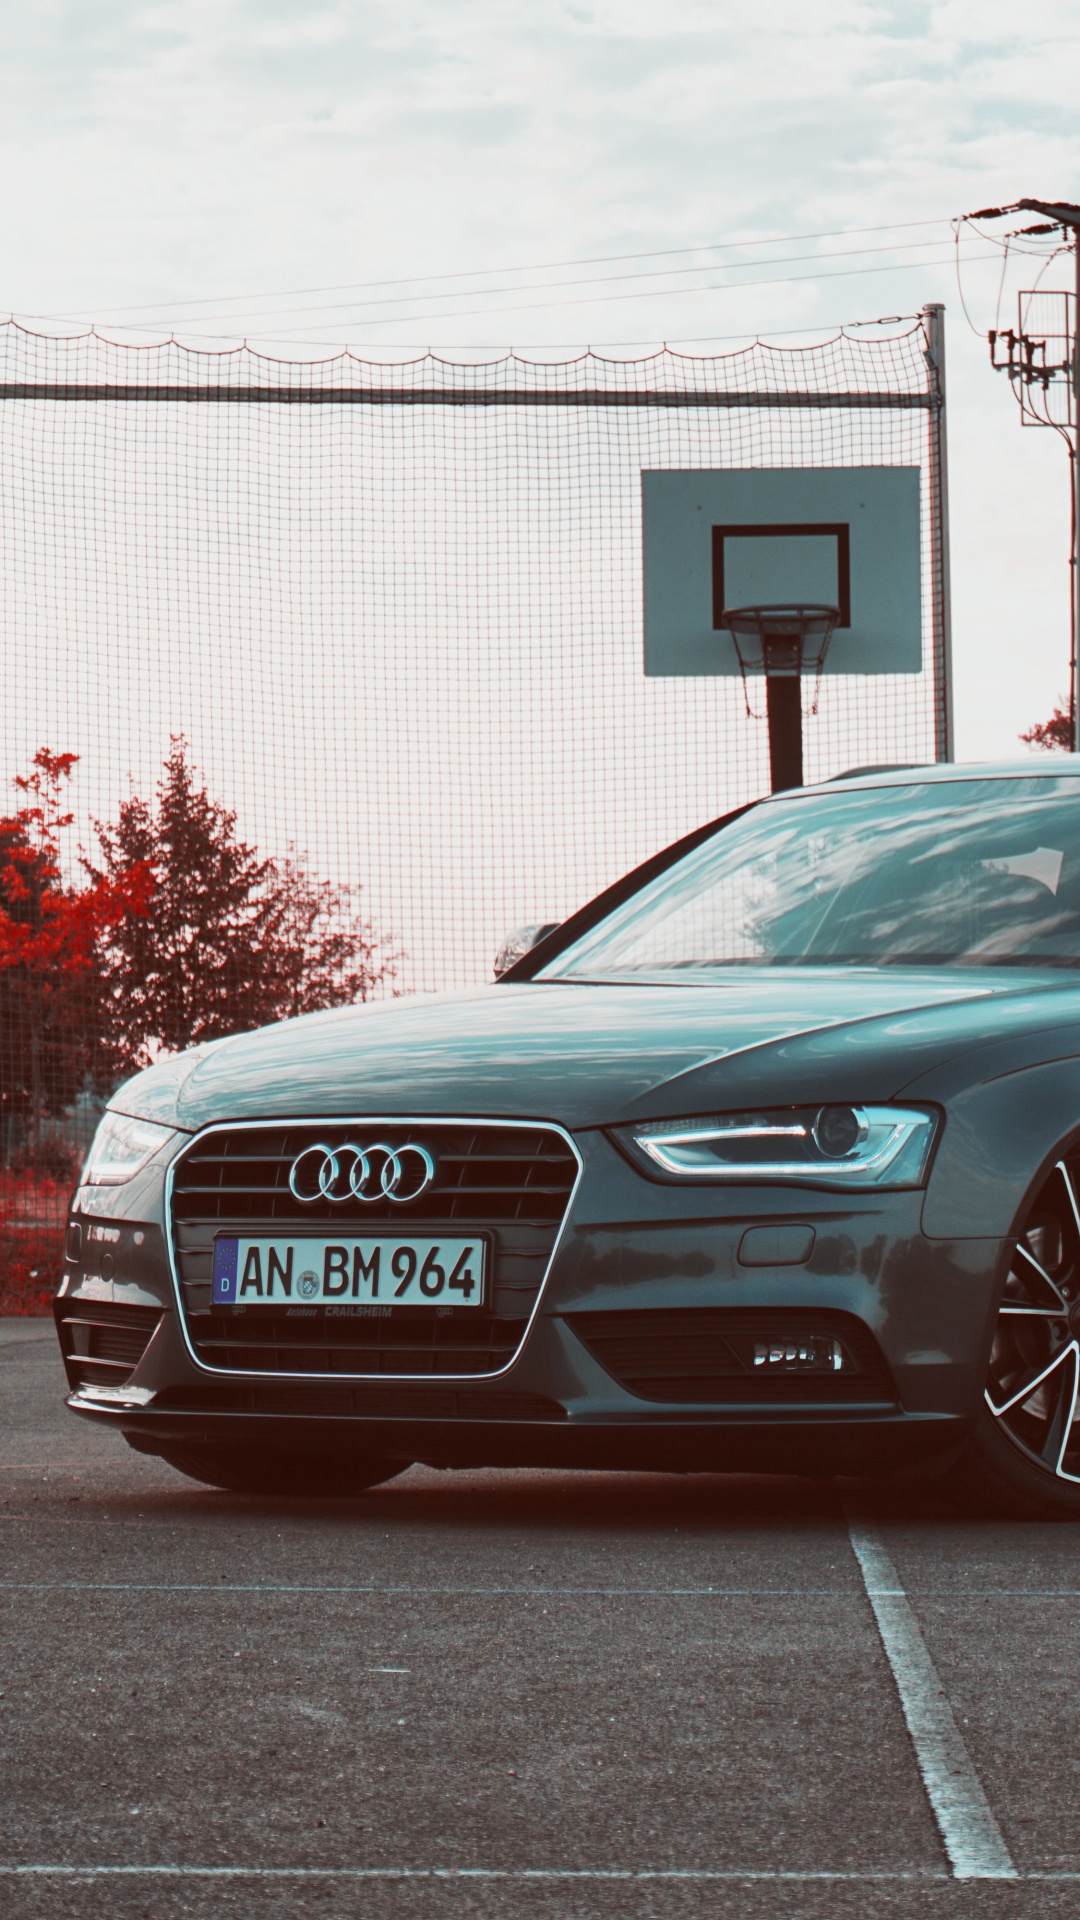 Berline Audi Noire Garée Sur Une Route en Béton Gris Pendant la Journée. Wallpaper in 1080x1920 Resolution